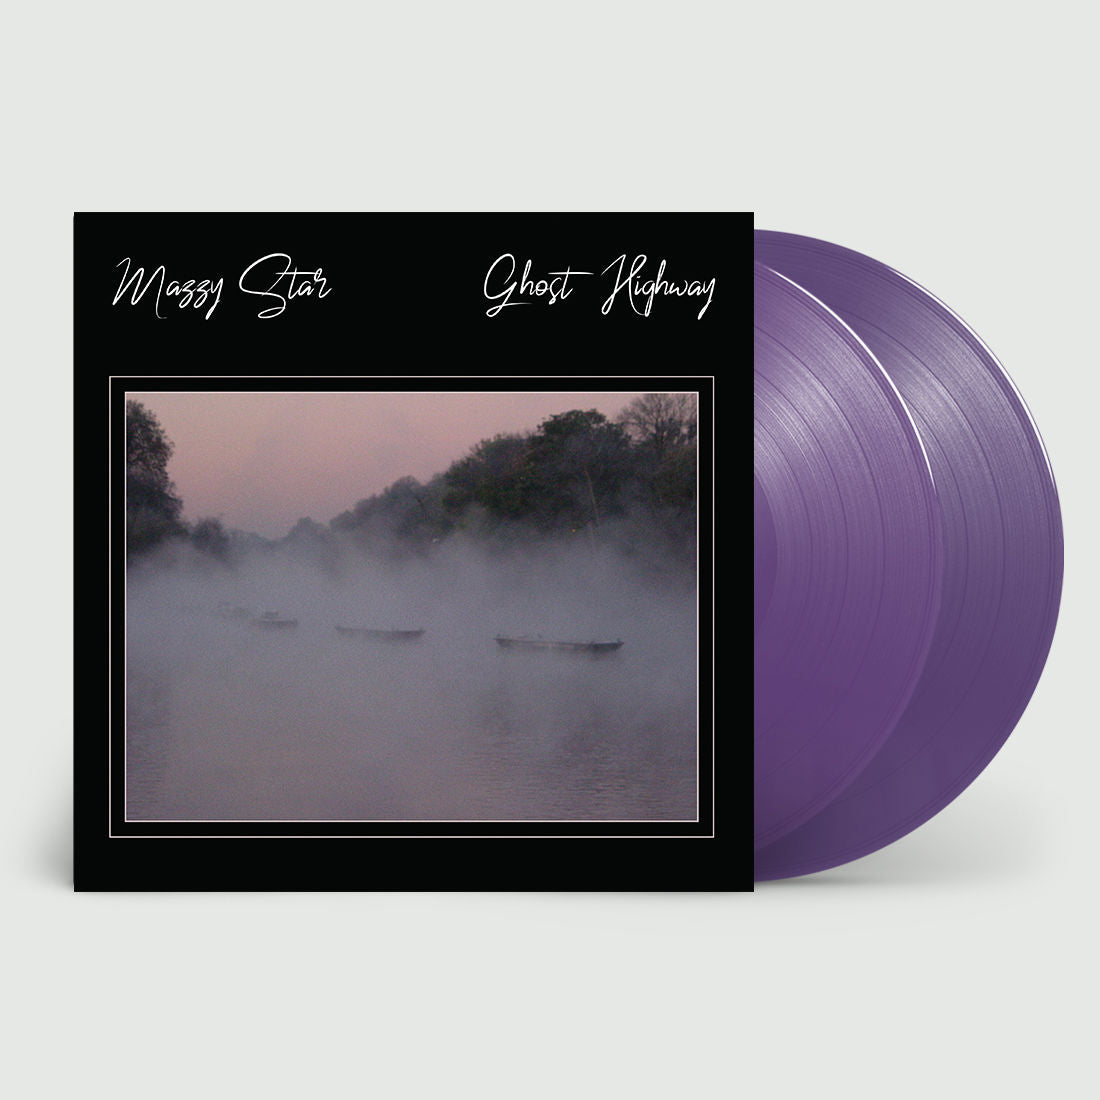 Ghost Highway: Limited Deluxe Purple Vinyl 2LP & 100 Copies Exclusive Art Print